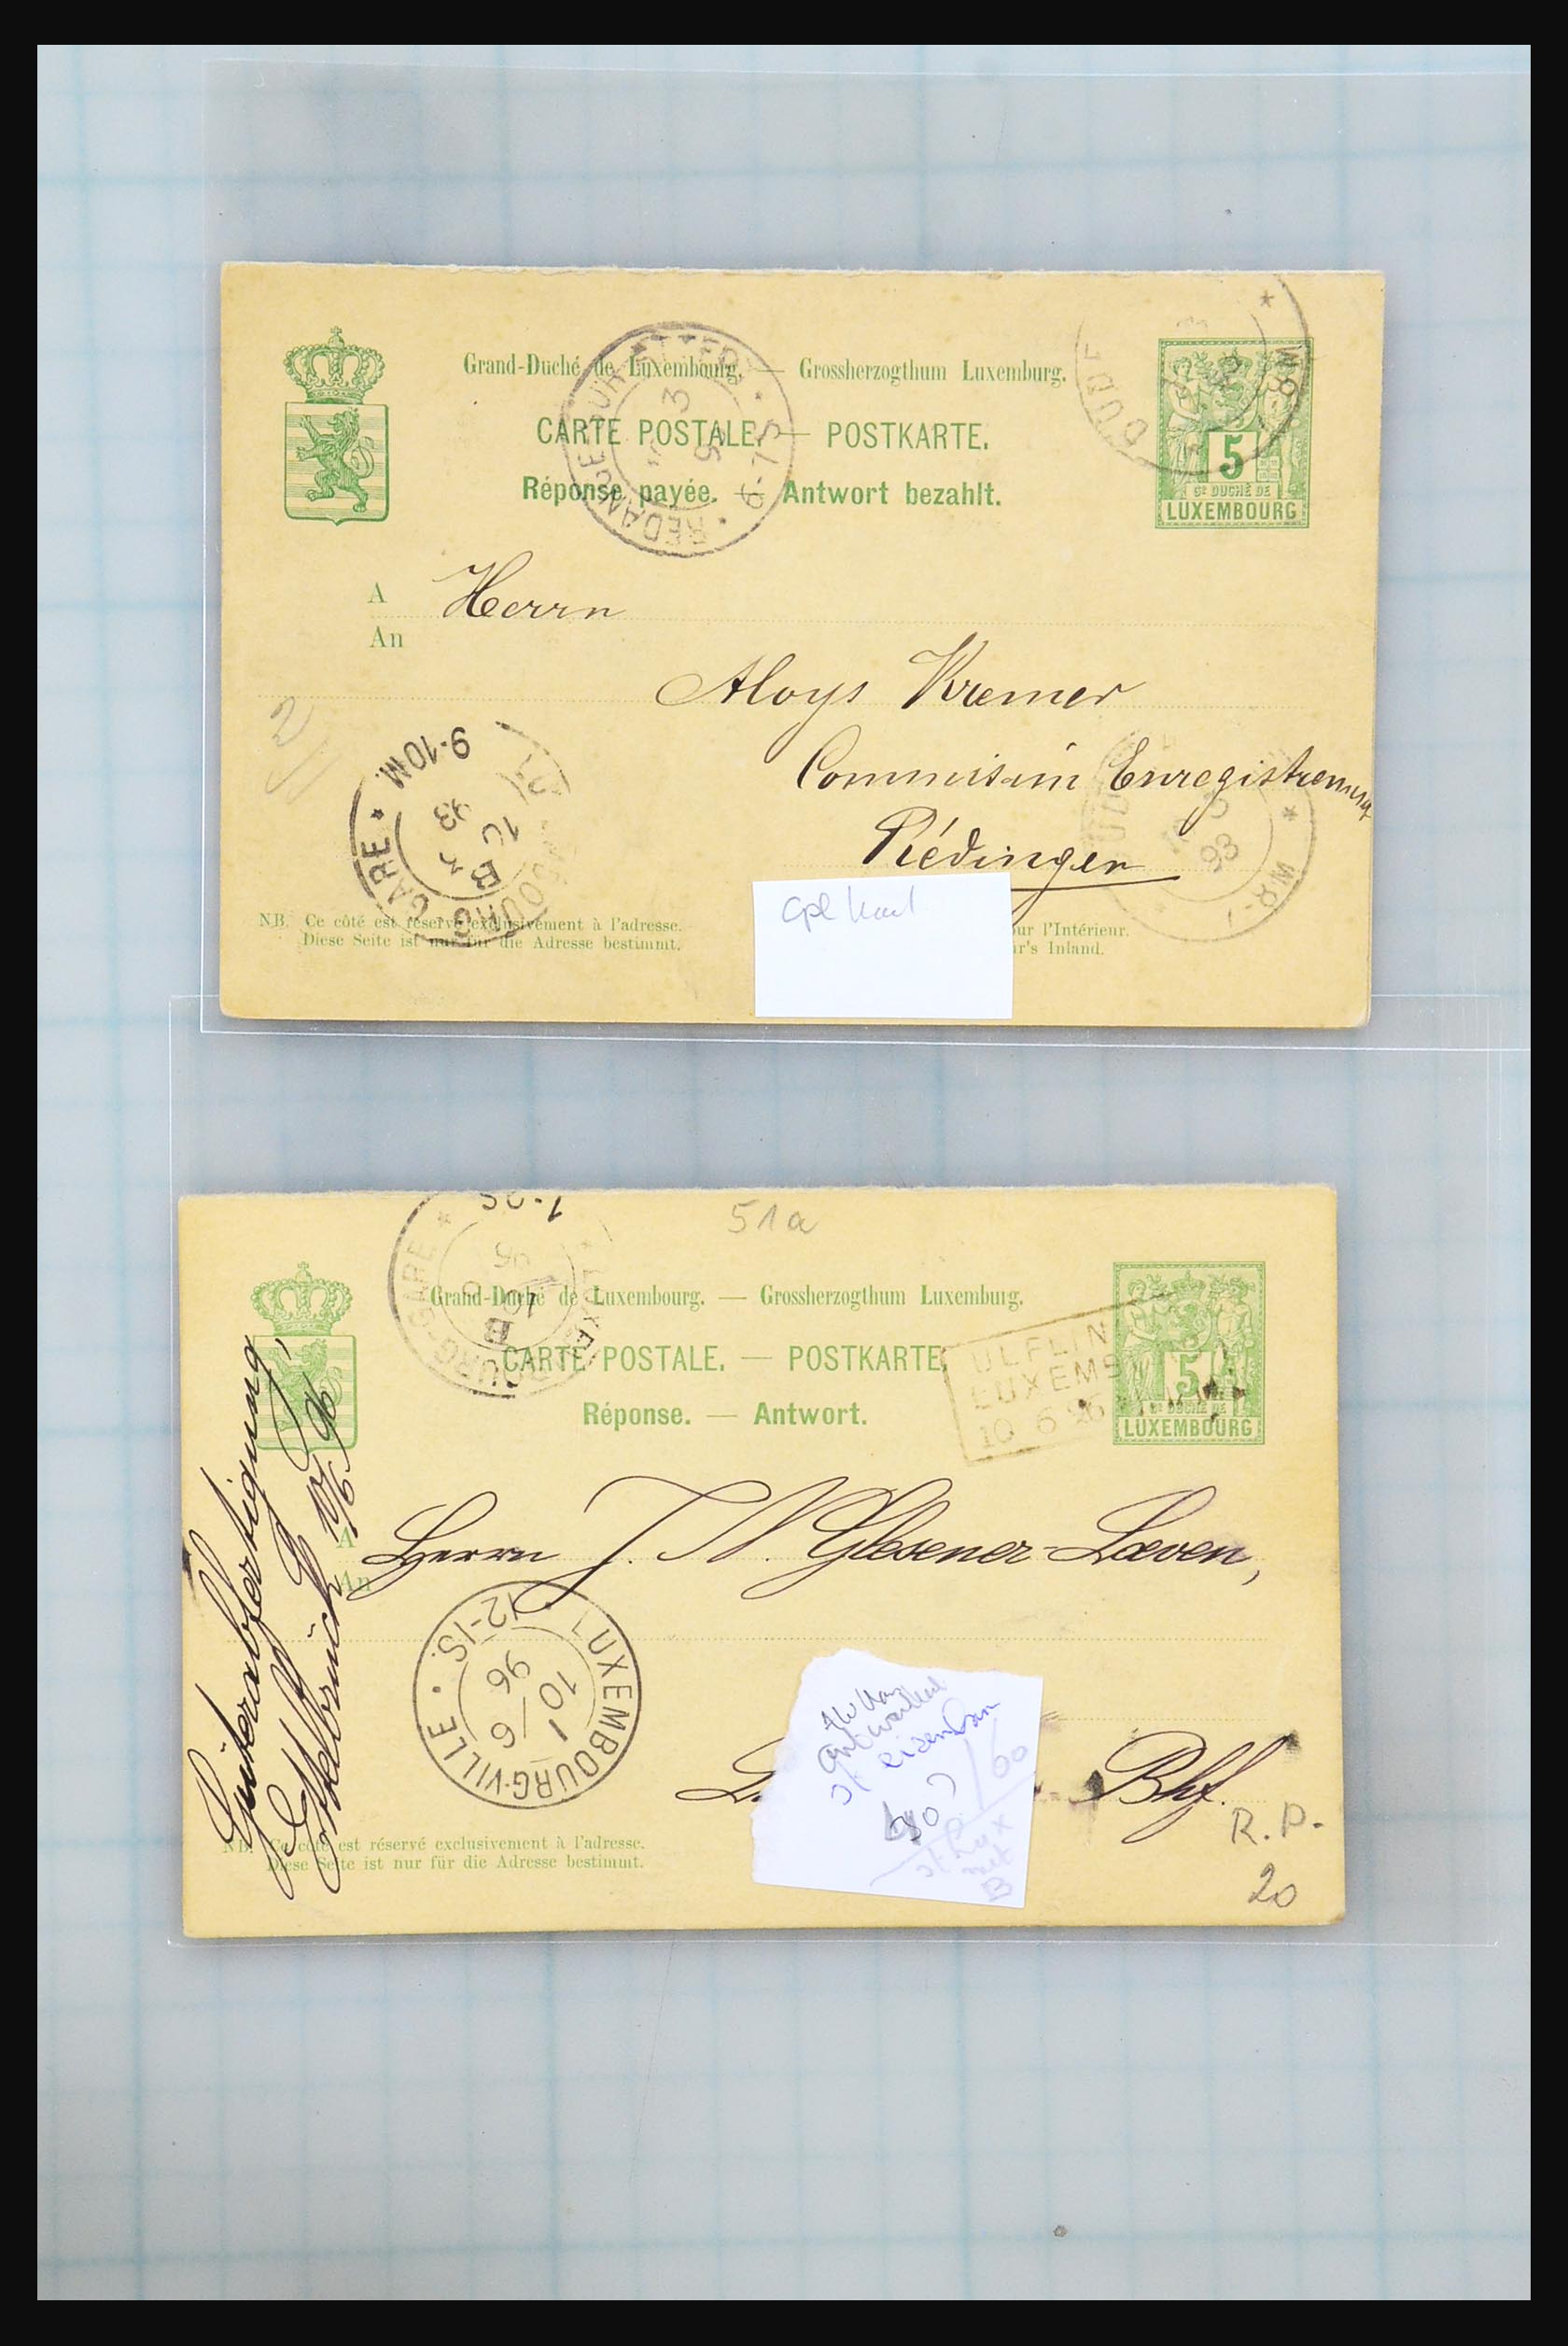 31358 050 - 31358 Portugal/Luxemburg/Griekenland brieven 1880-1960.